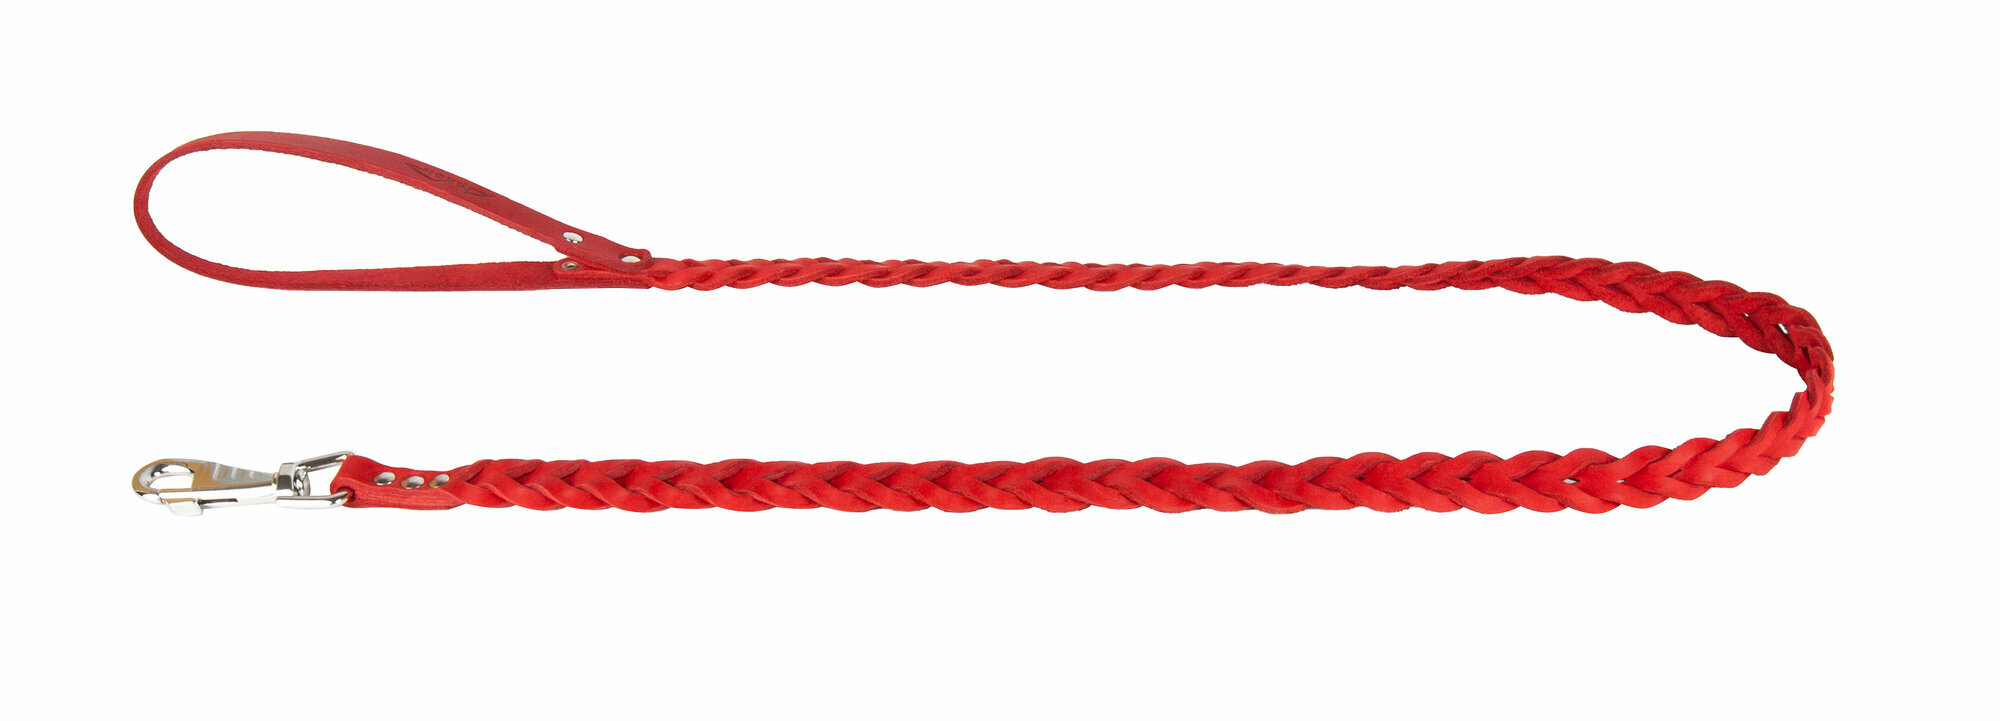 Поводок аркон кожаный 1.2м х 12мм плетение "Косичка", цвет красный